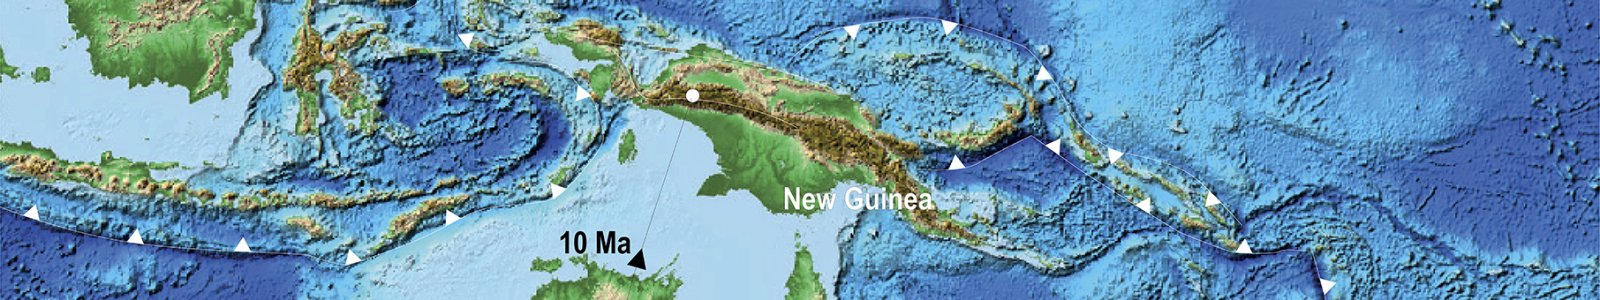 Hoogtekaart van gedeelte Australië, Nieuw-Guinea en Indonesië, met breuklijnen